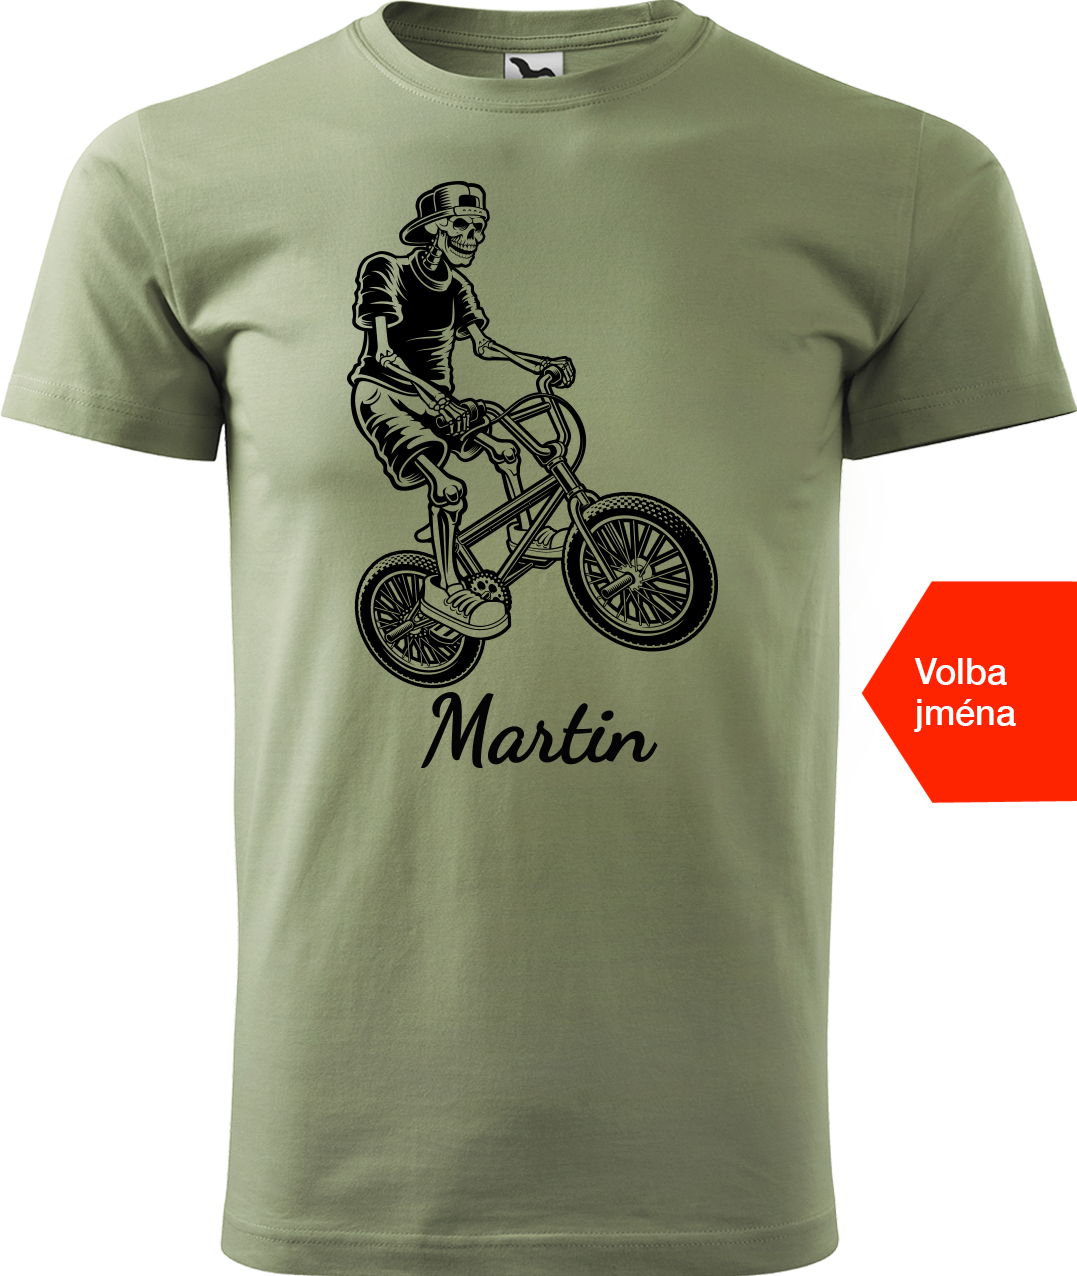 Pánské tričko s kolem a jménem - Trial Bike Velikost: 4XL, Barva: Světlá khaki (28)